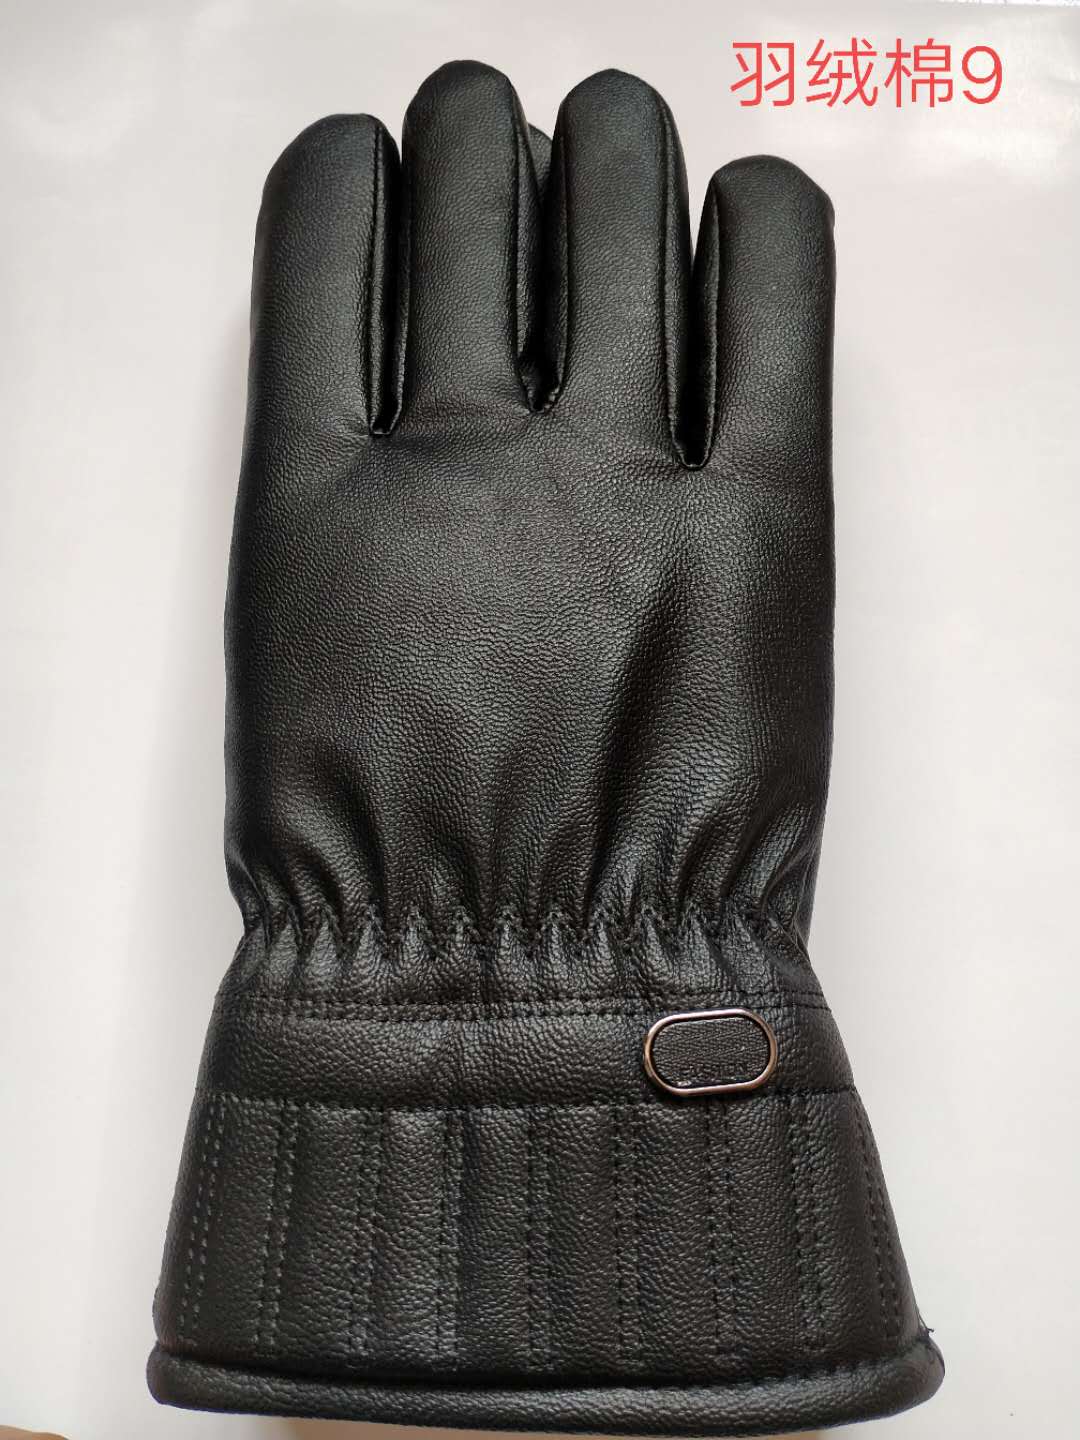 骑行手套保暖手套款式爆款时尚耐用手套厂家直销价格面议166